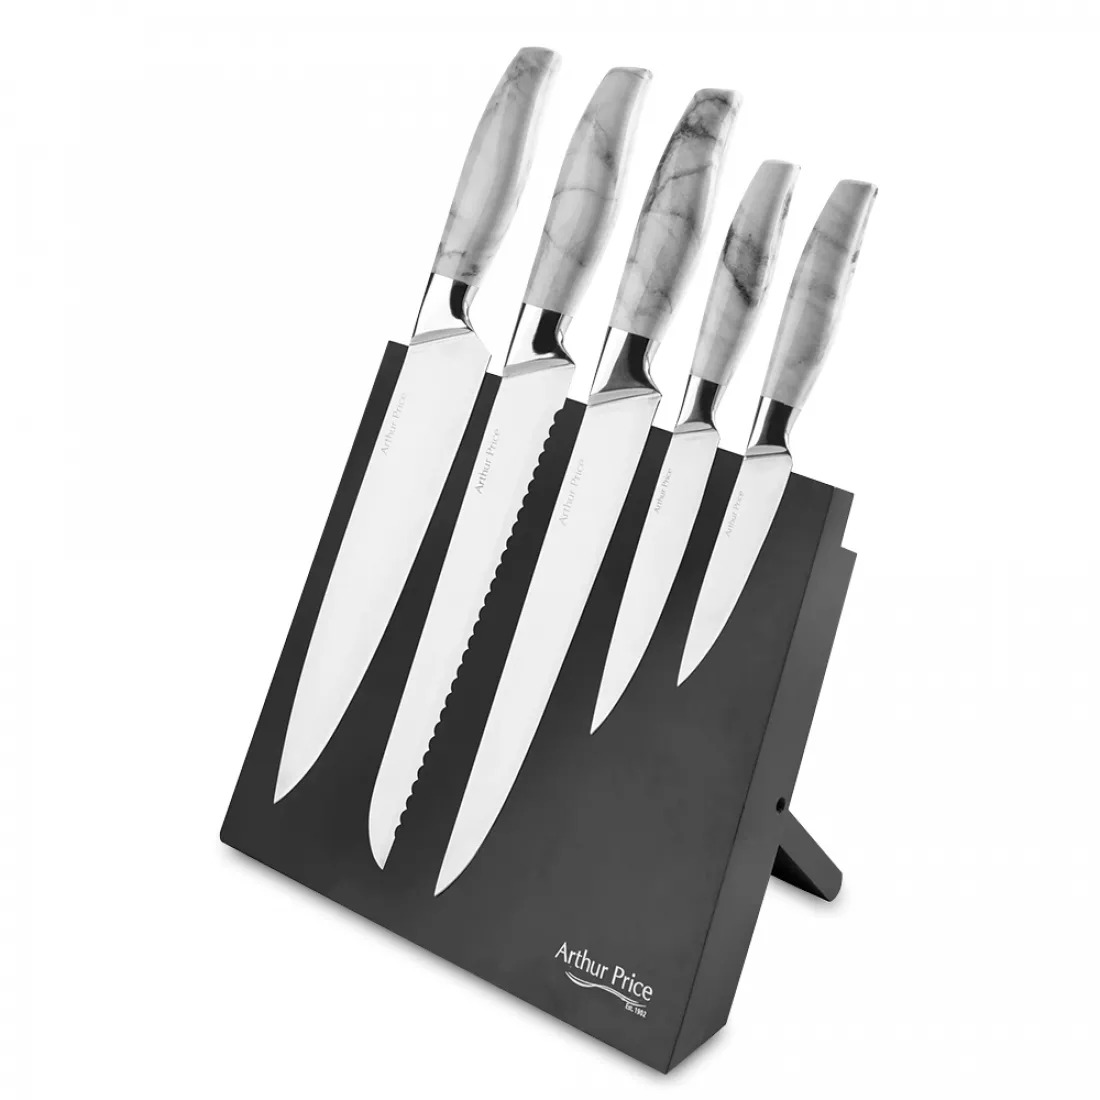 набор ножей для стейка рэттейл 6 шт в подарочной коробке apzris0841 arthur price Набор ножей Arthur Price Кухня 5 шт